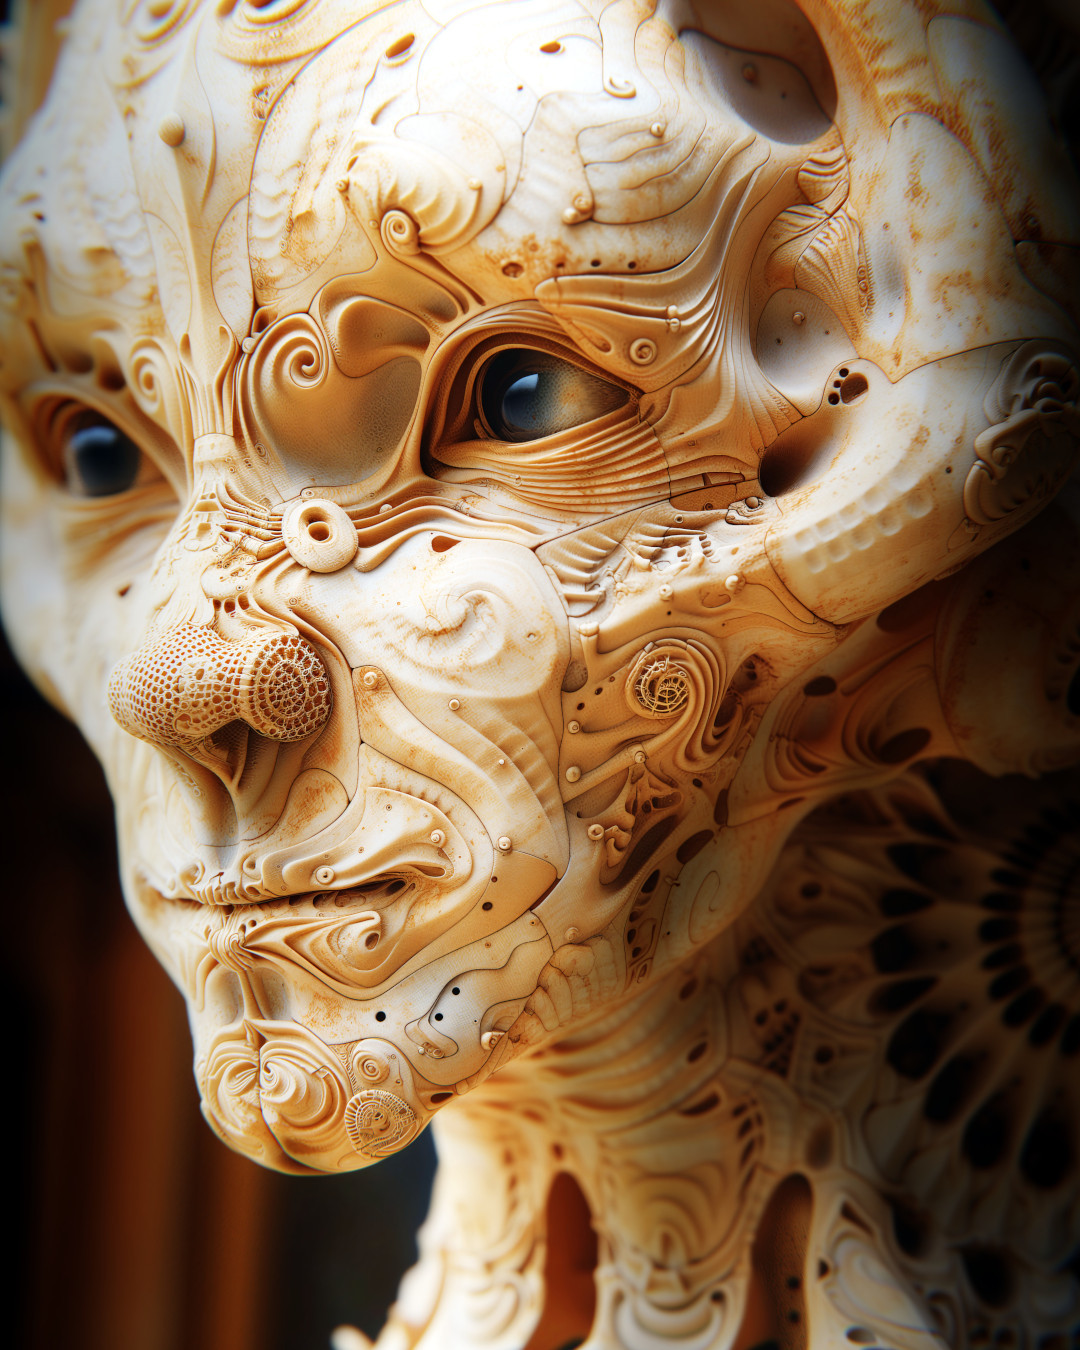 Face of an alien, surrealistic biomechanics, porcelain